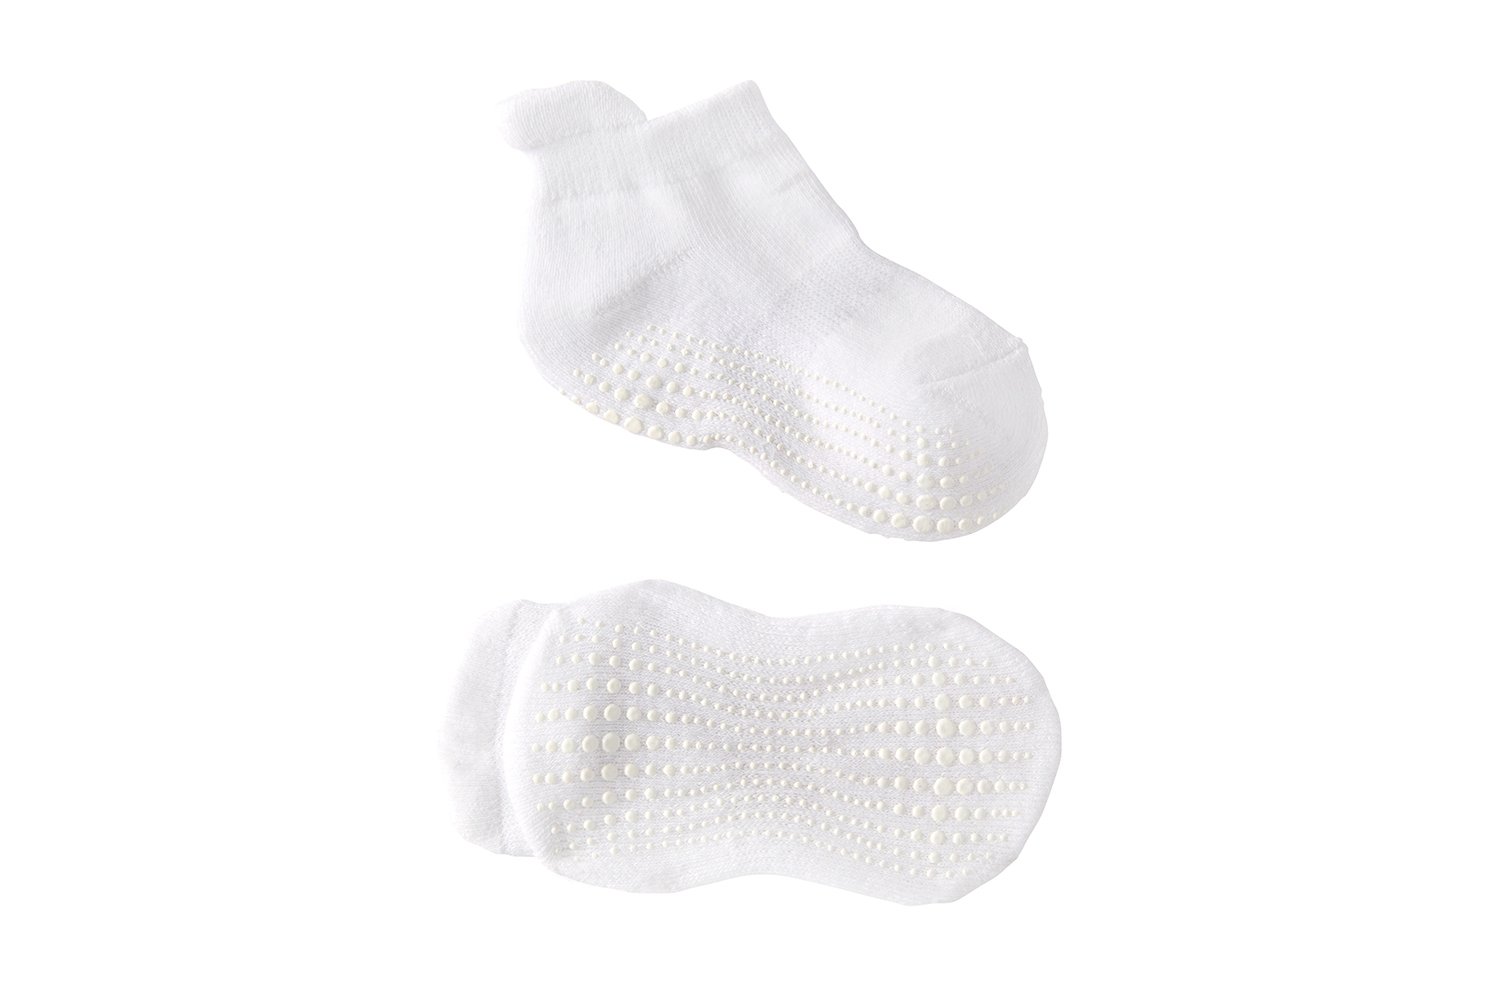 Non Slip Ankle Grip Socks For Babies 